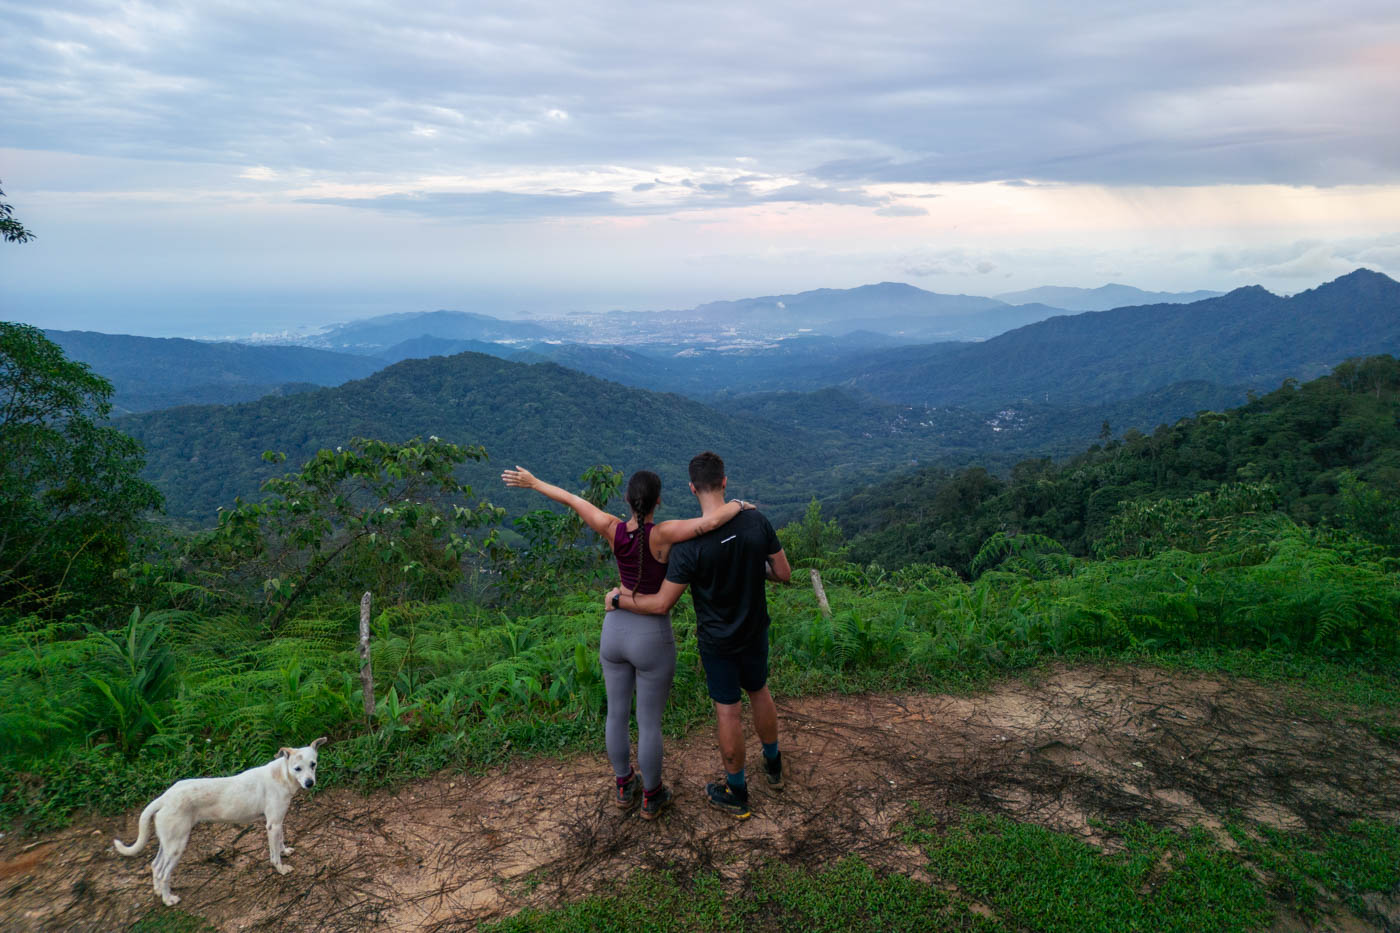 Ryan and Sara hugging at Los Pinos viewpoint overlooking Santa Marta with a white dog.